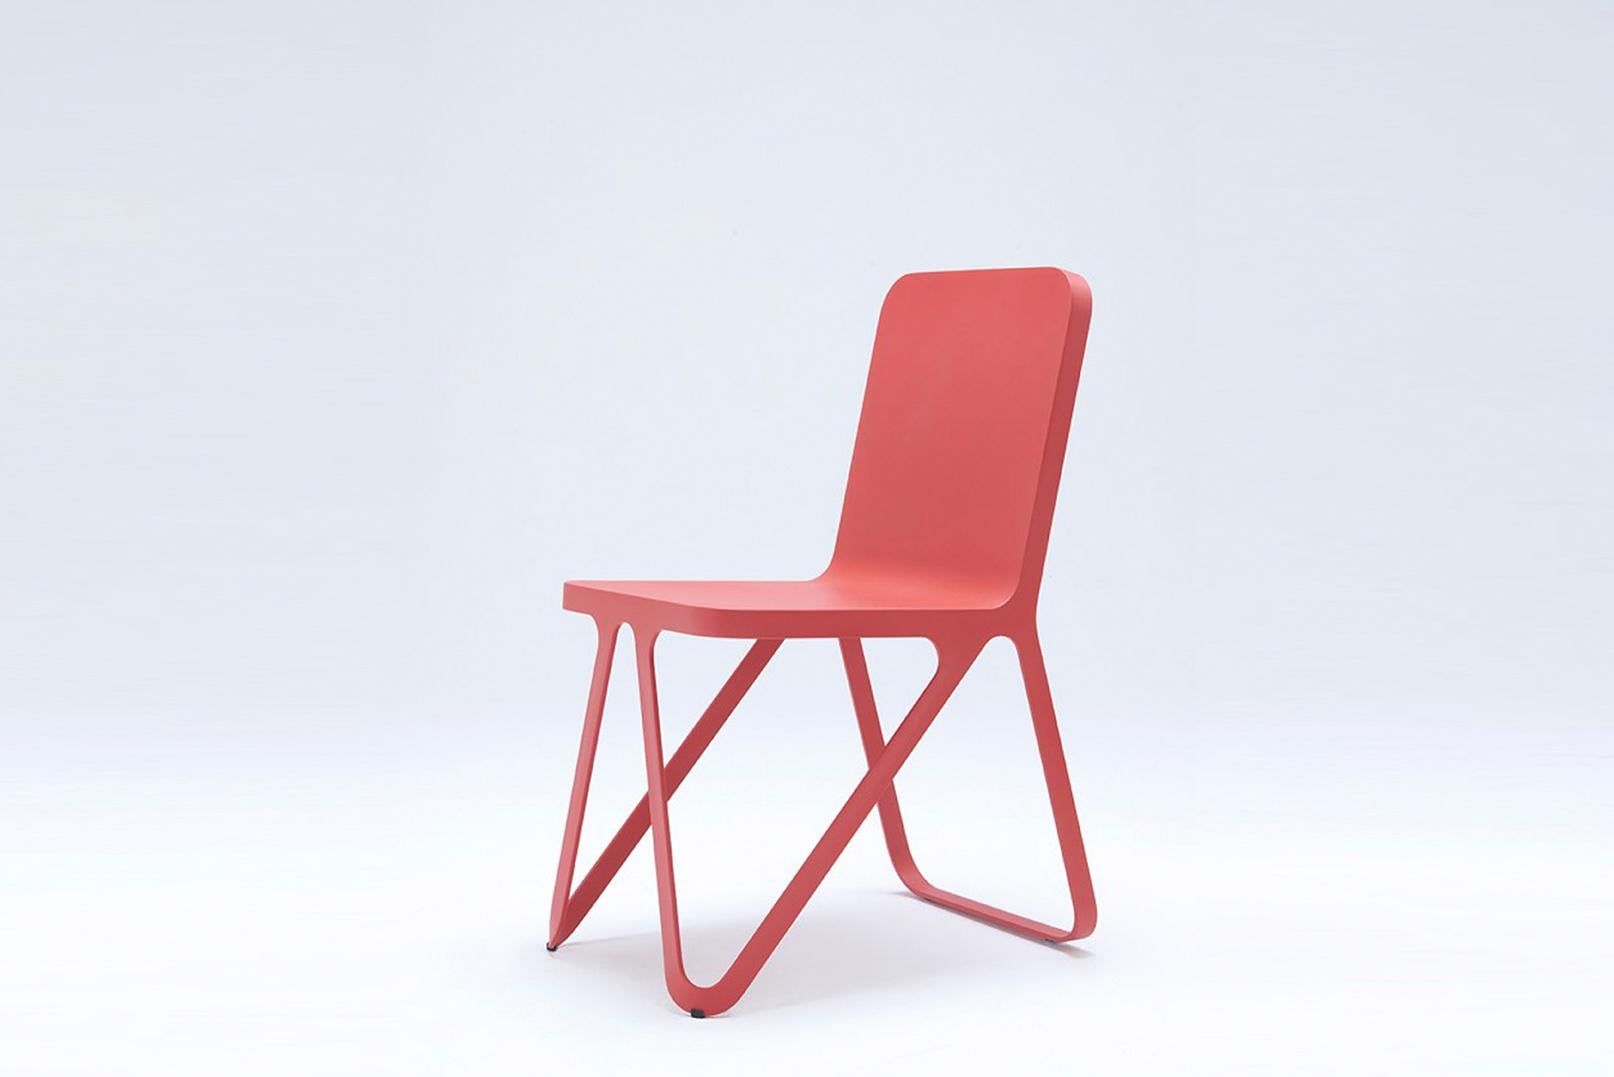 Chaise Looping rouge de Sebastian Scherer
Dimensions : D 57x L 40 x H 80 cm
Matériau : Aluminium.
Poids : 5,1 kg.
Également disponible : Couleurs : Blanc neige / sable clair / jaune soleil / orange argile / rouge rouille / bleu espace / gris